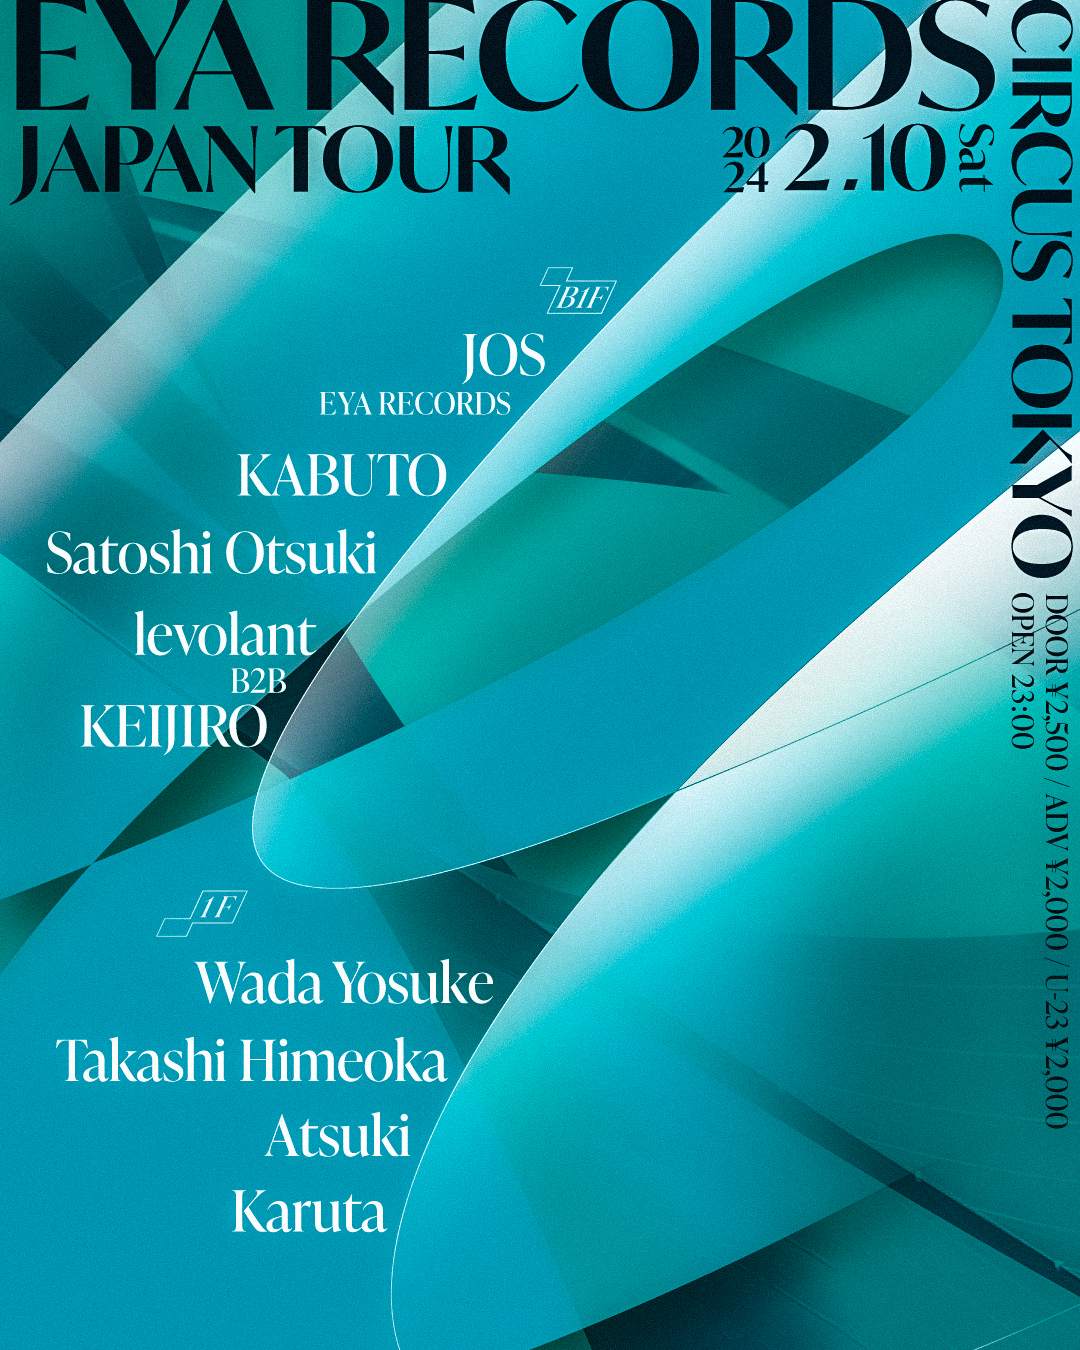 EYA RECORDS JAPAN TOUR - Página frontal